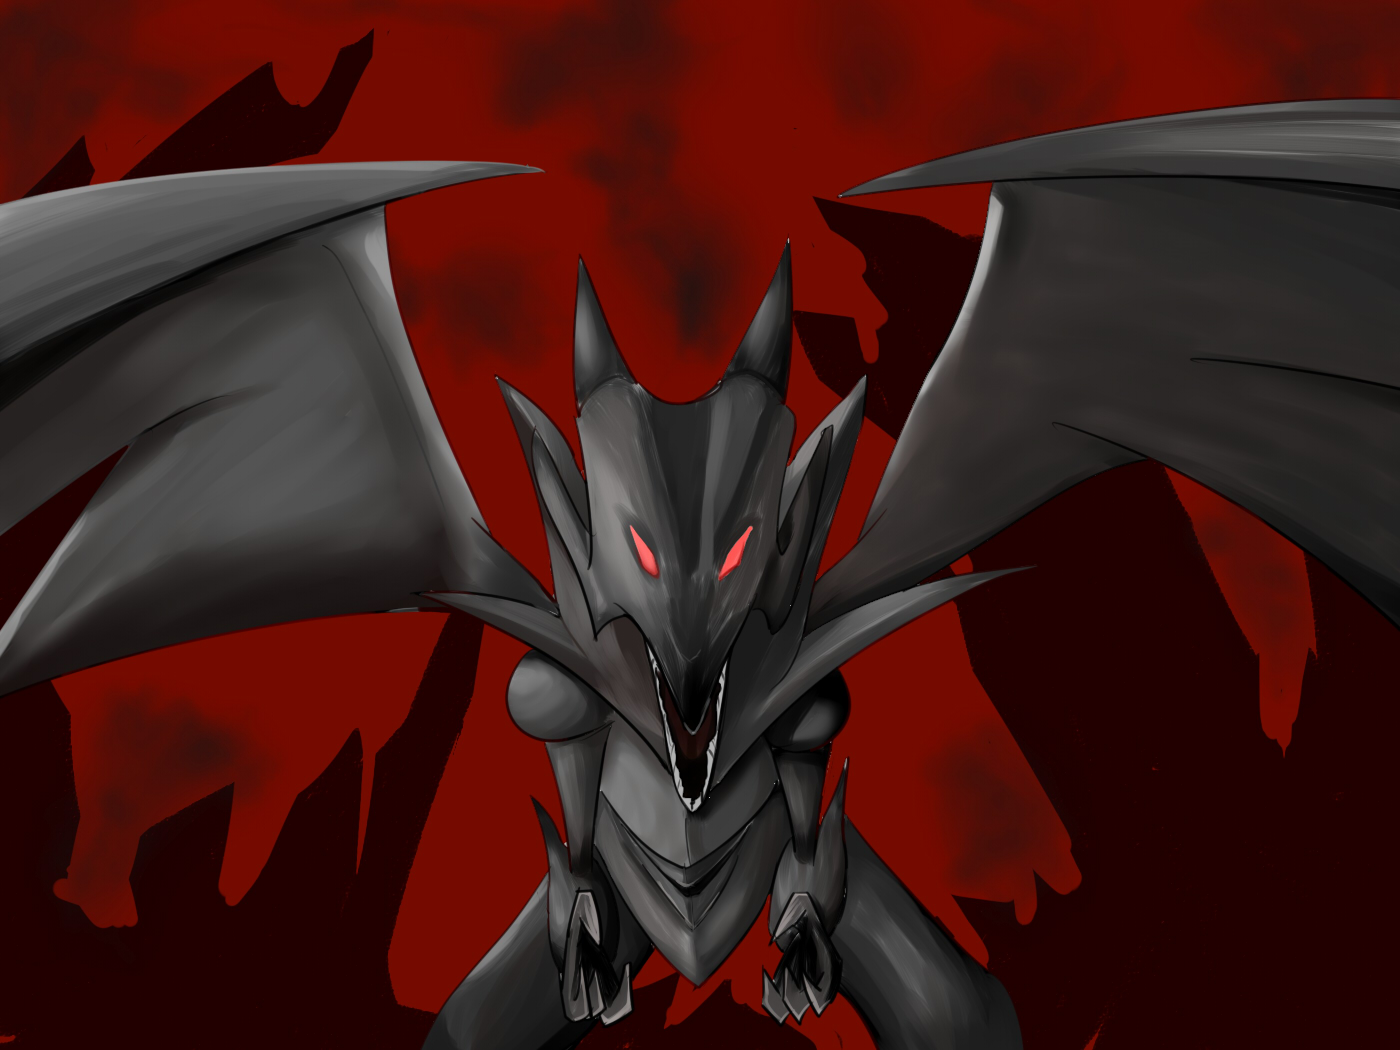 Yu Gi Oh Trading Card Games Red Eyes Black Dragon Anime Dragon Artwork Digital Art Fan Art 1400x1050